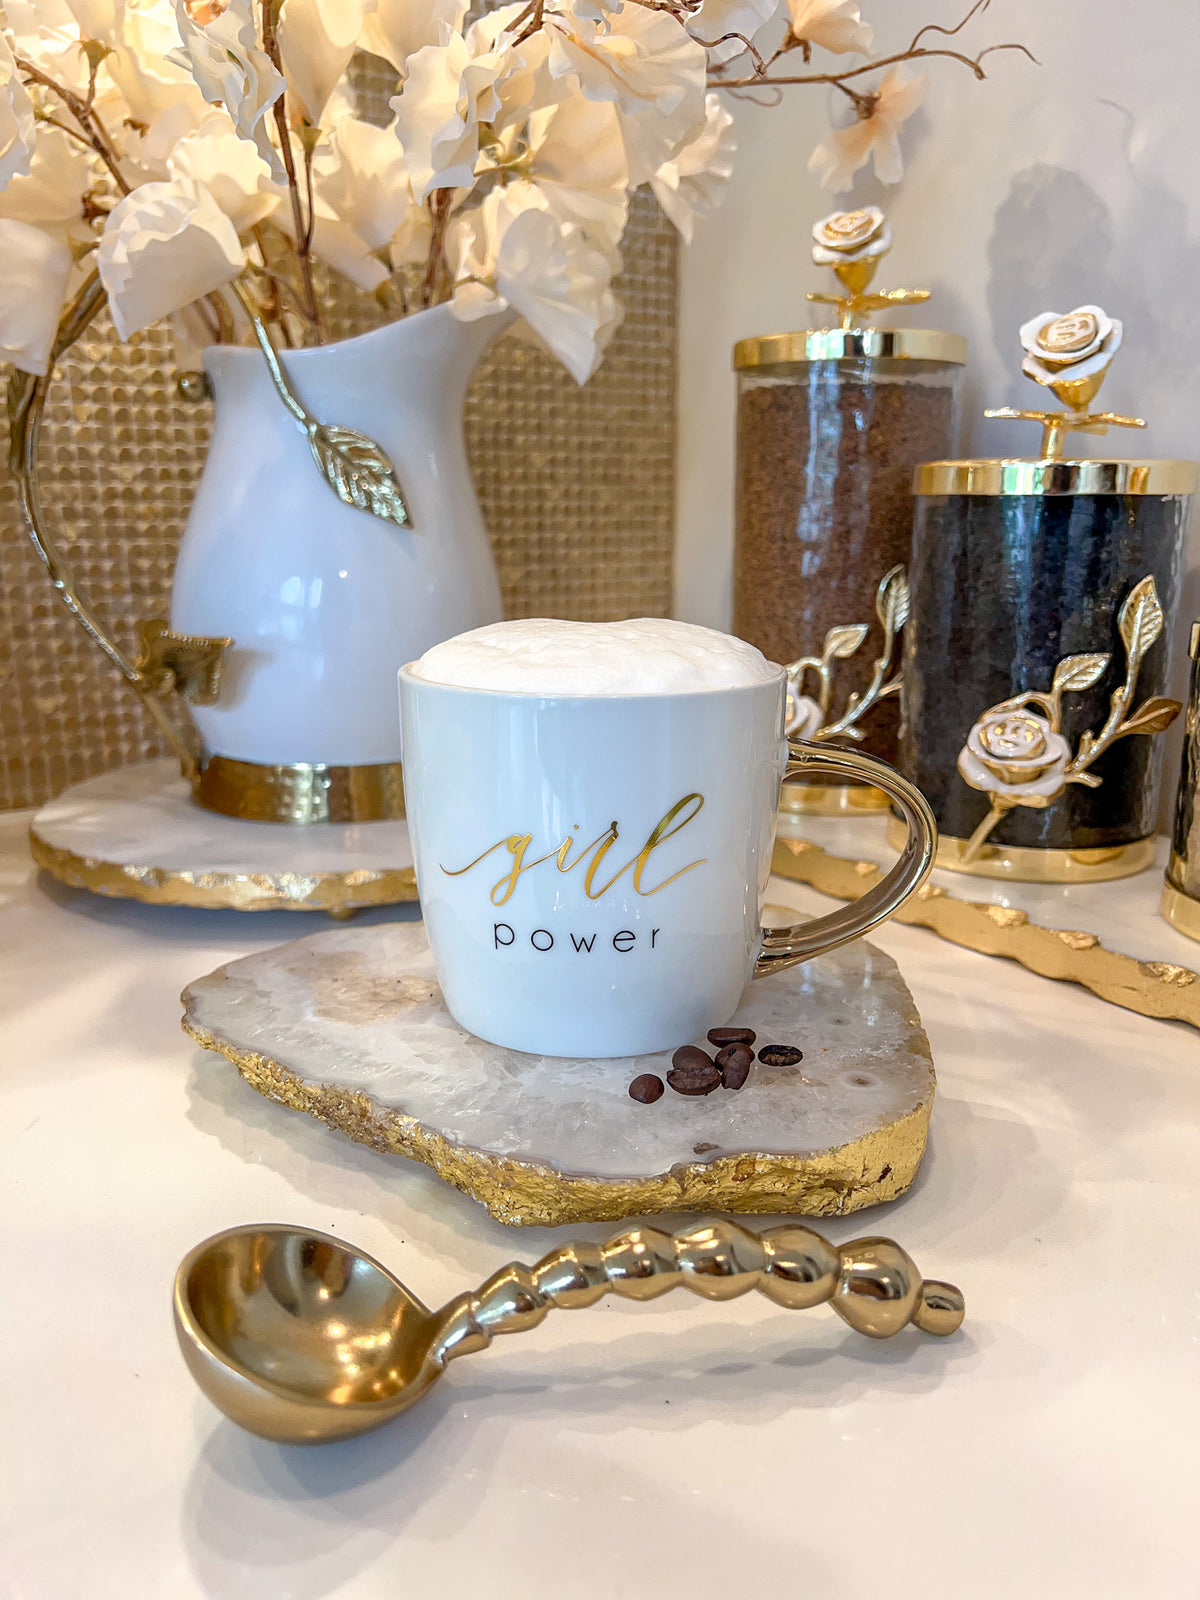 Girl Power :: Coffee Mug